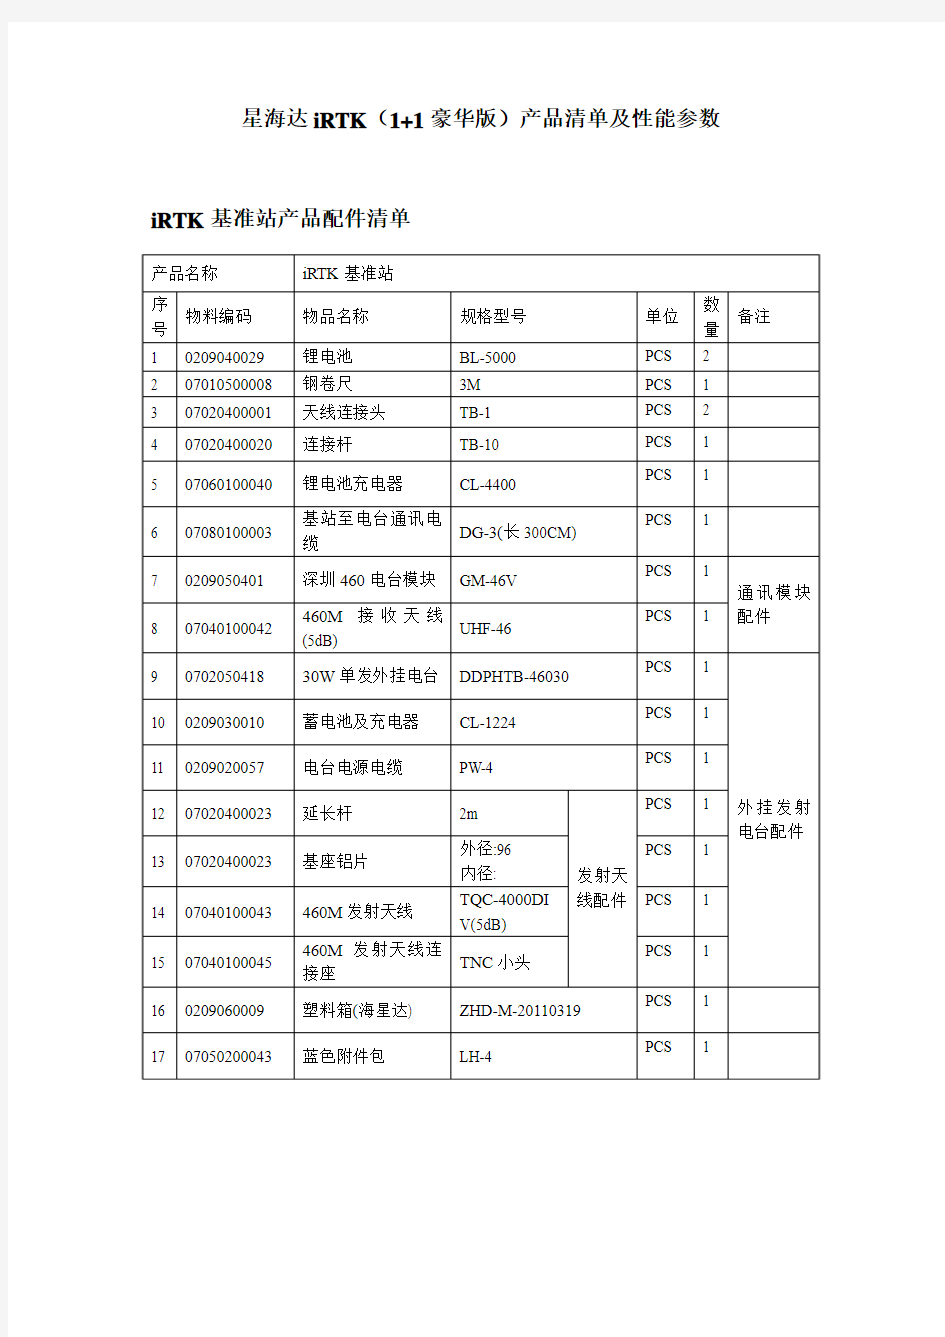 海星达iRTK(1+1豪华版)产品清单及性能参数